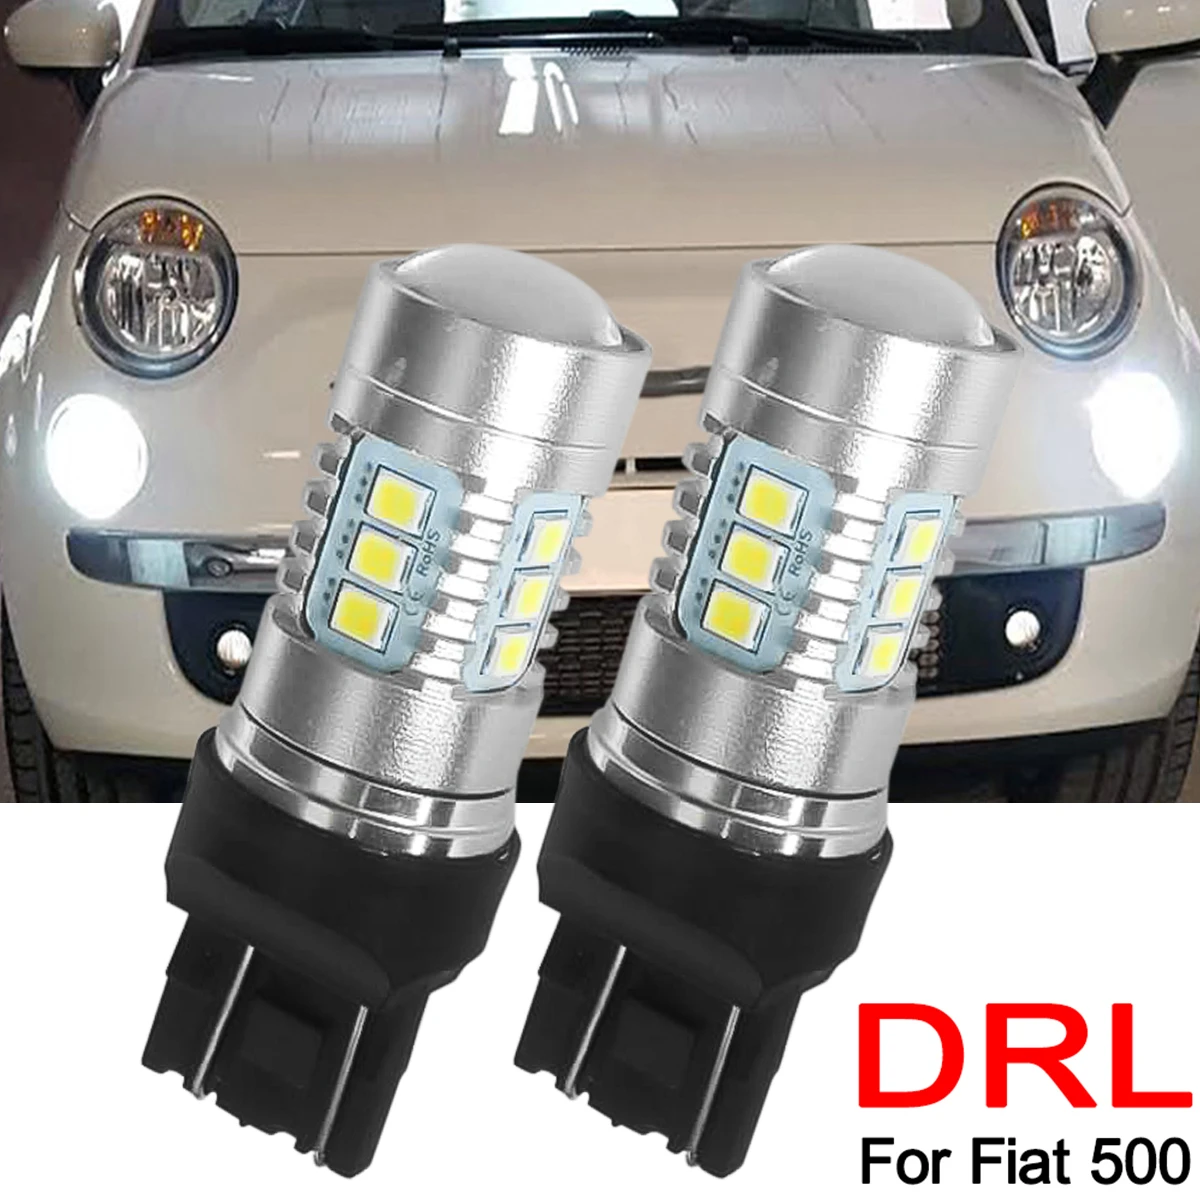 For Fiat 500 Daytime Running Light T20 580 582 Headlight Led Lamp Bulbs Drl White 6000k 12v Super - Signal Lamp - AliExpress